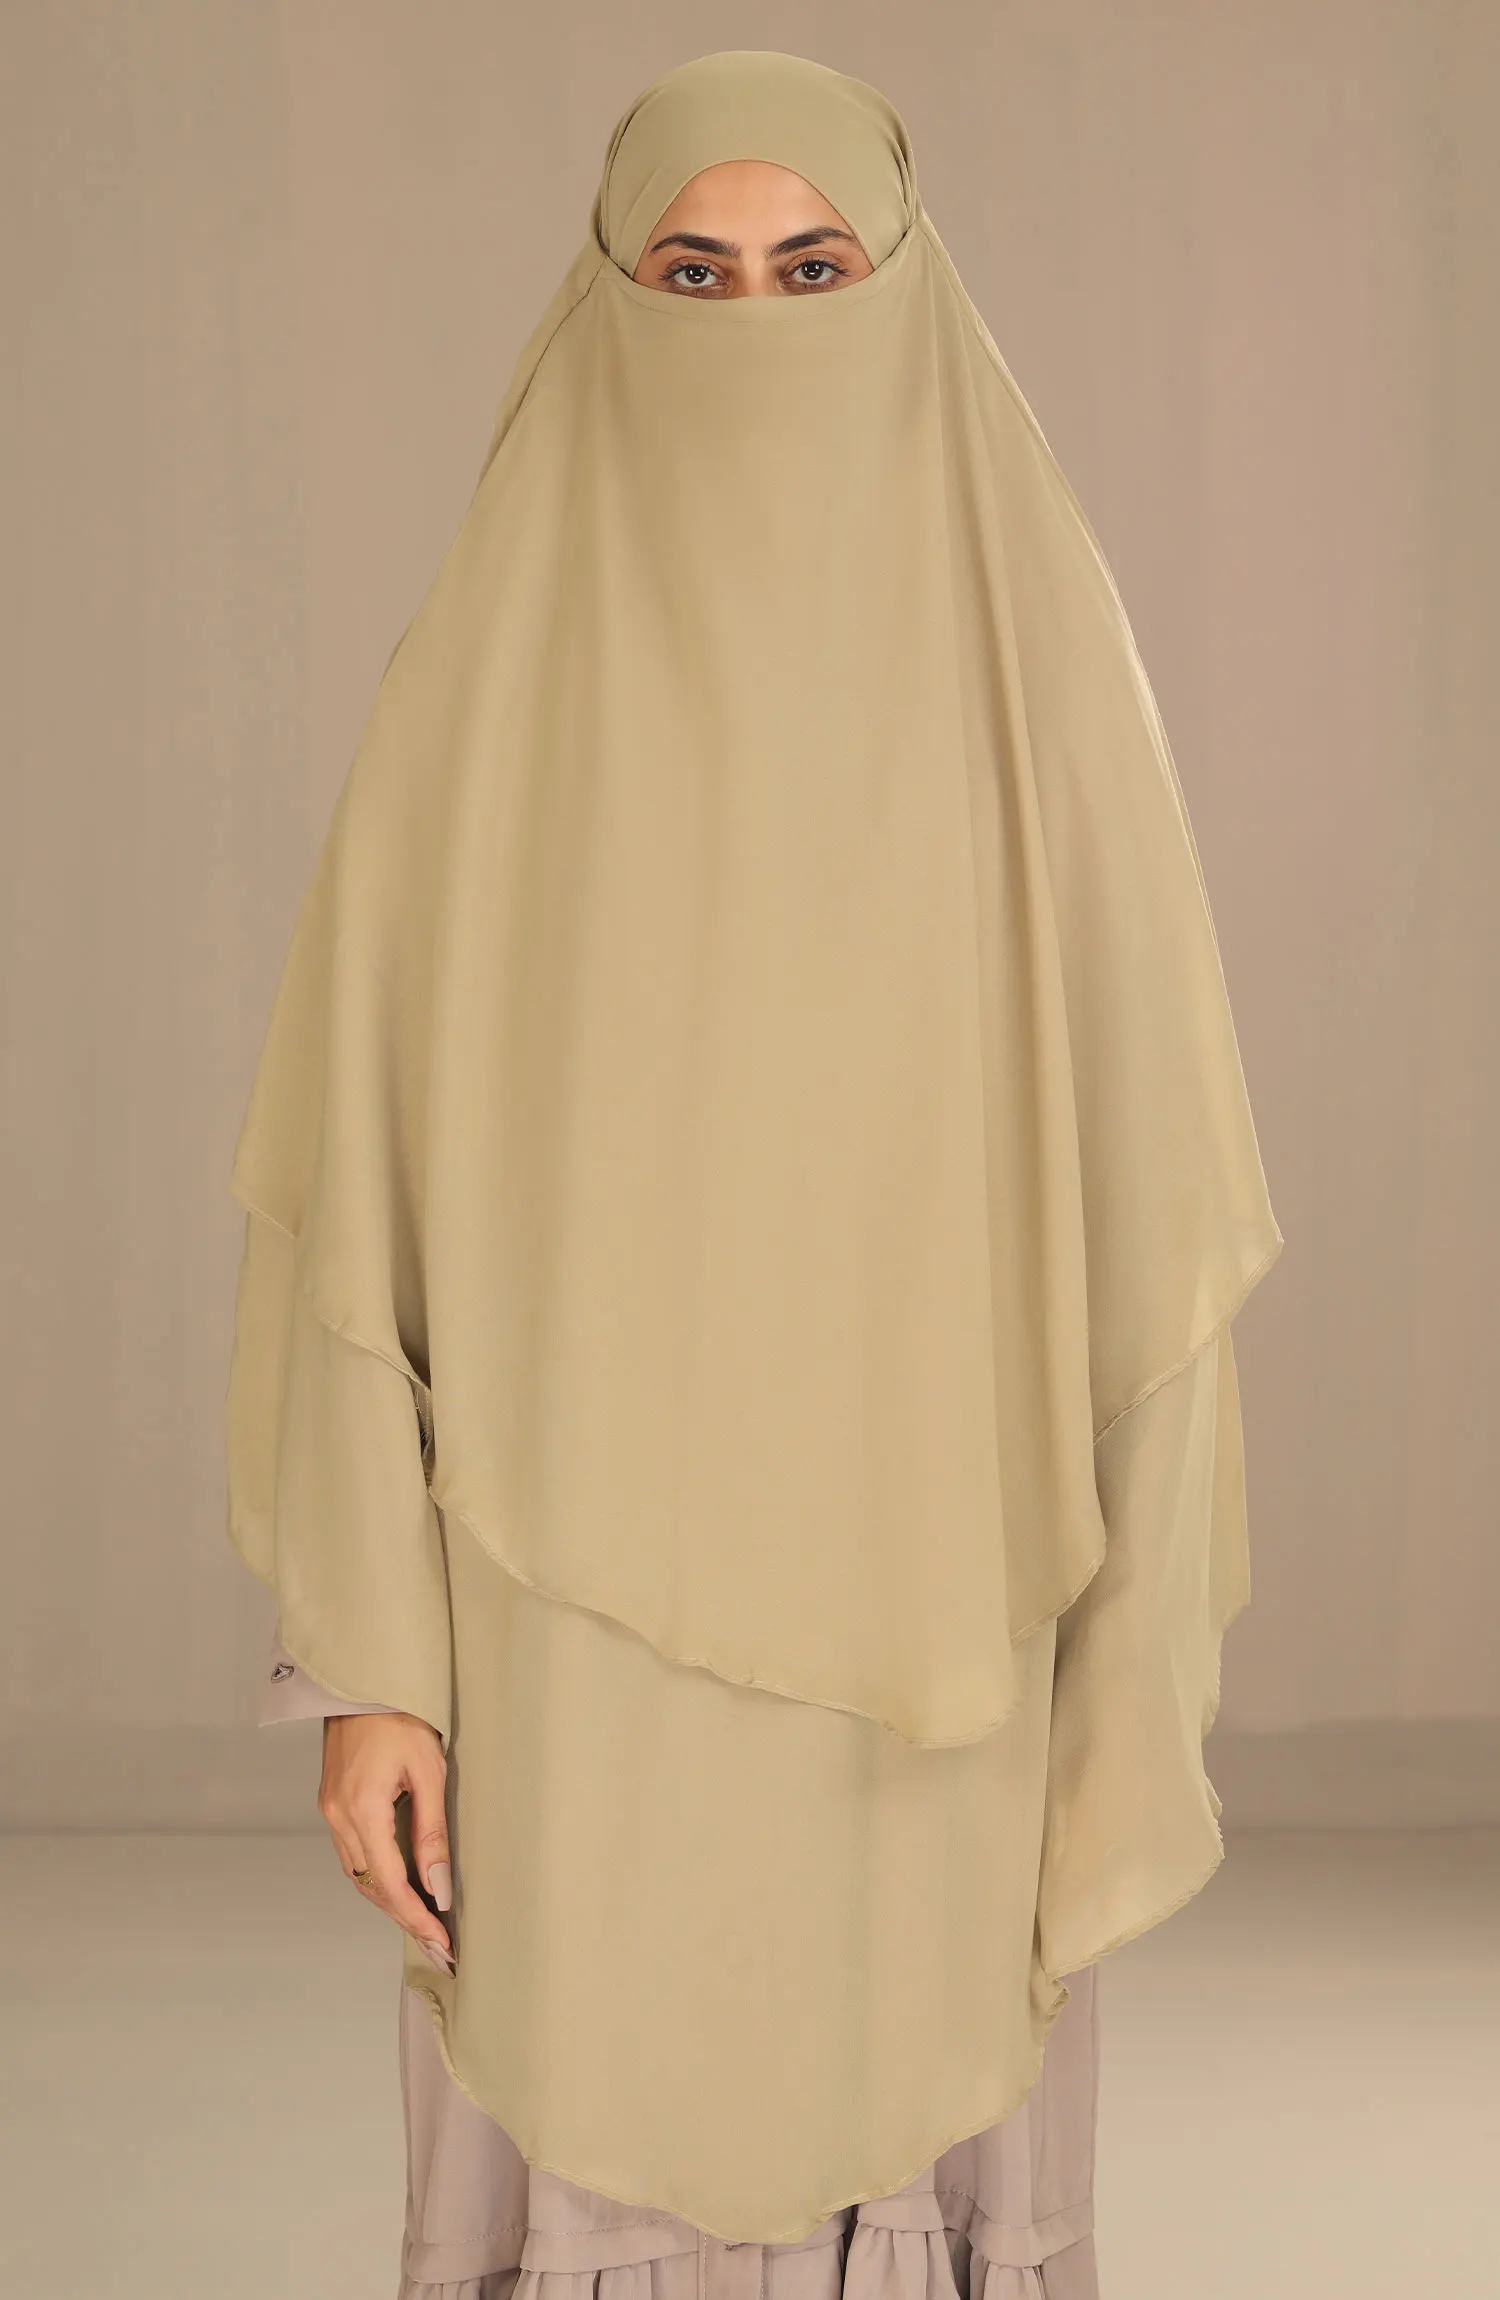 Black Camels Shanaz Khimar Hijab Collection - SH 10